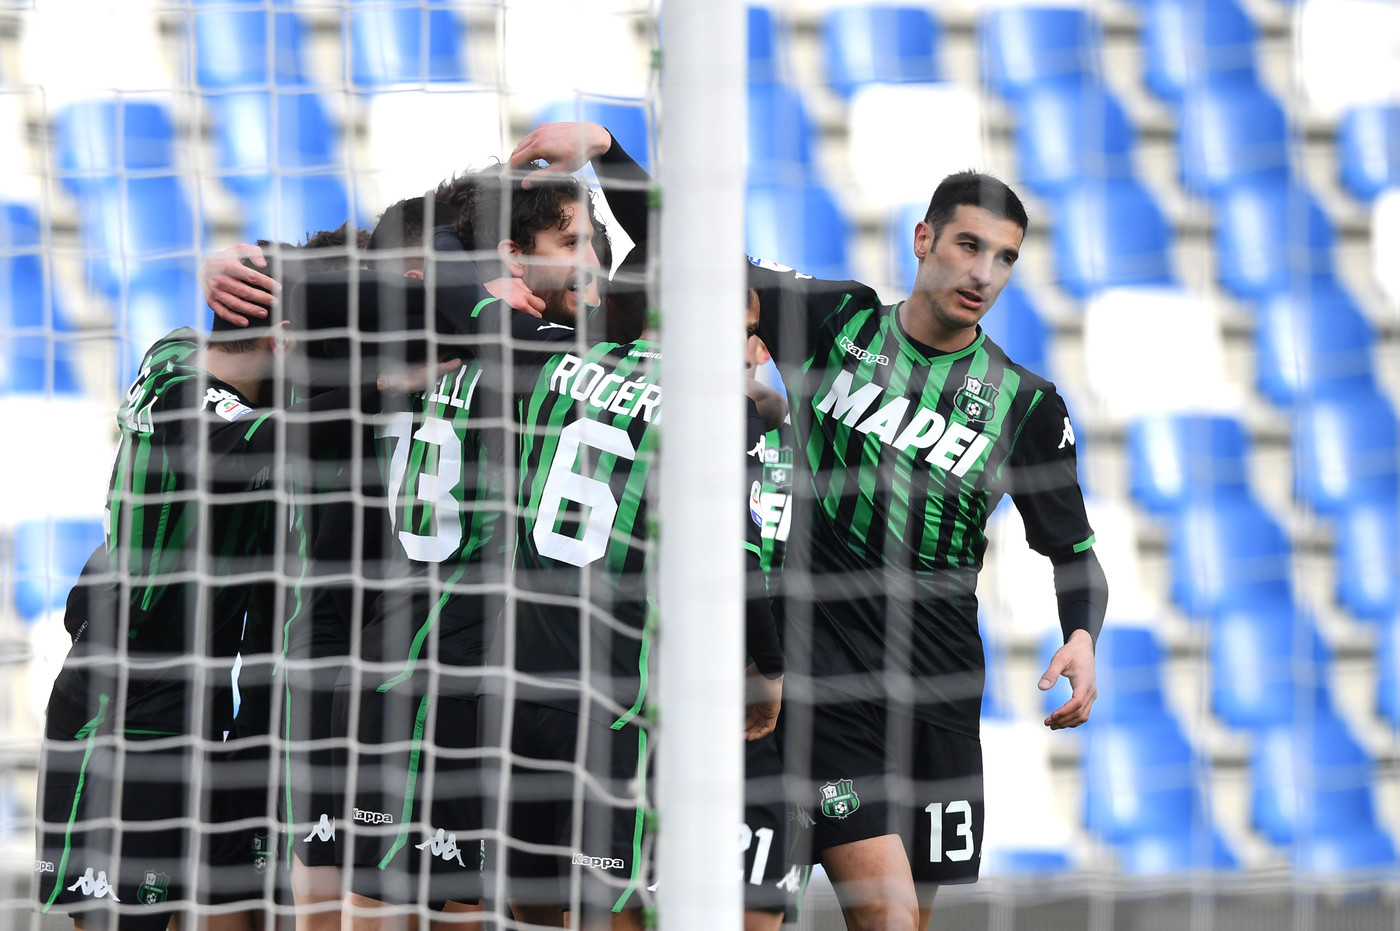 Serie A, Sassuolo torna alla vittoria: tris a uno spento Cagliari